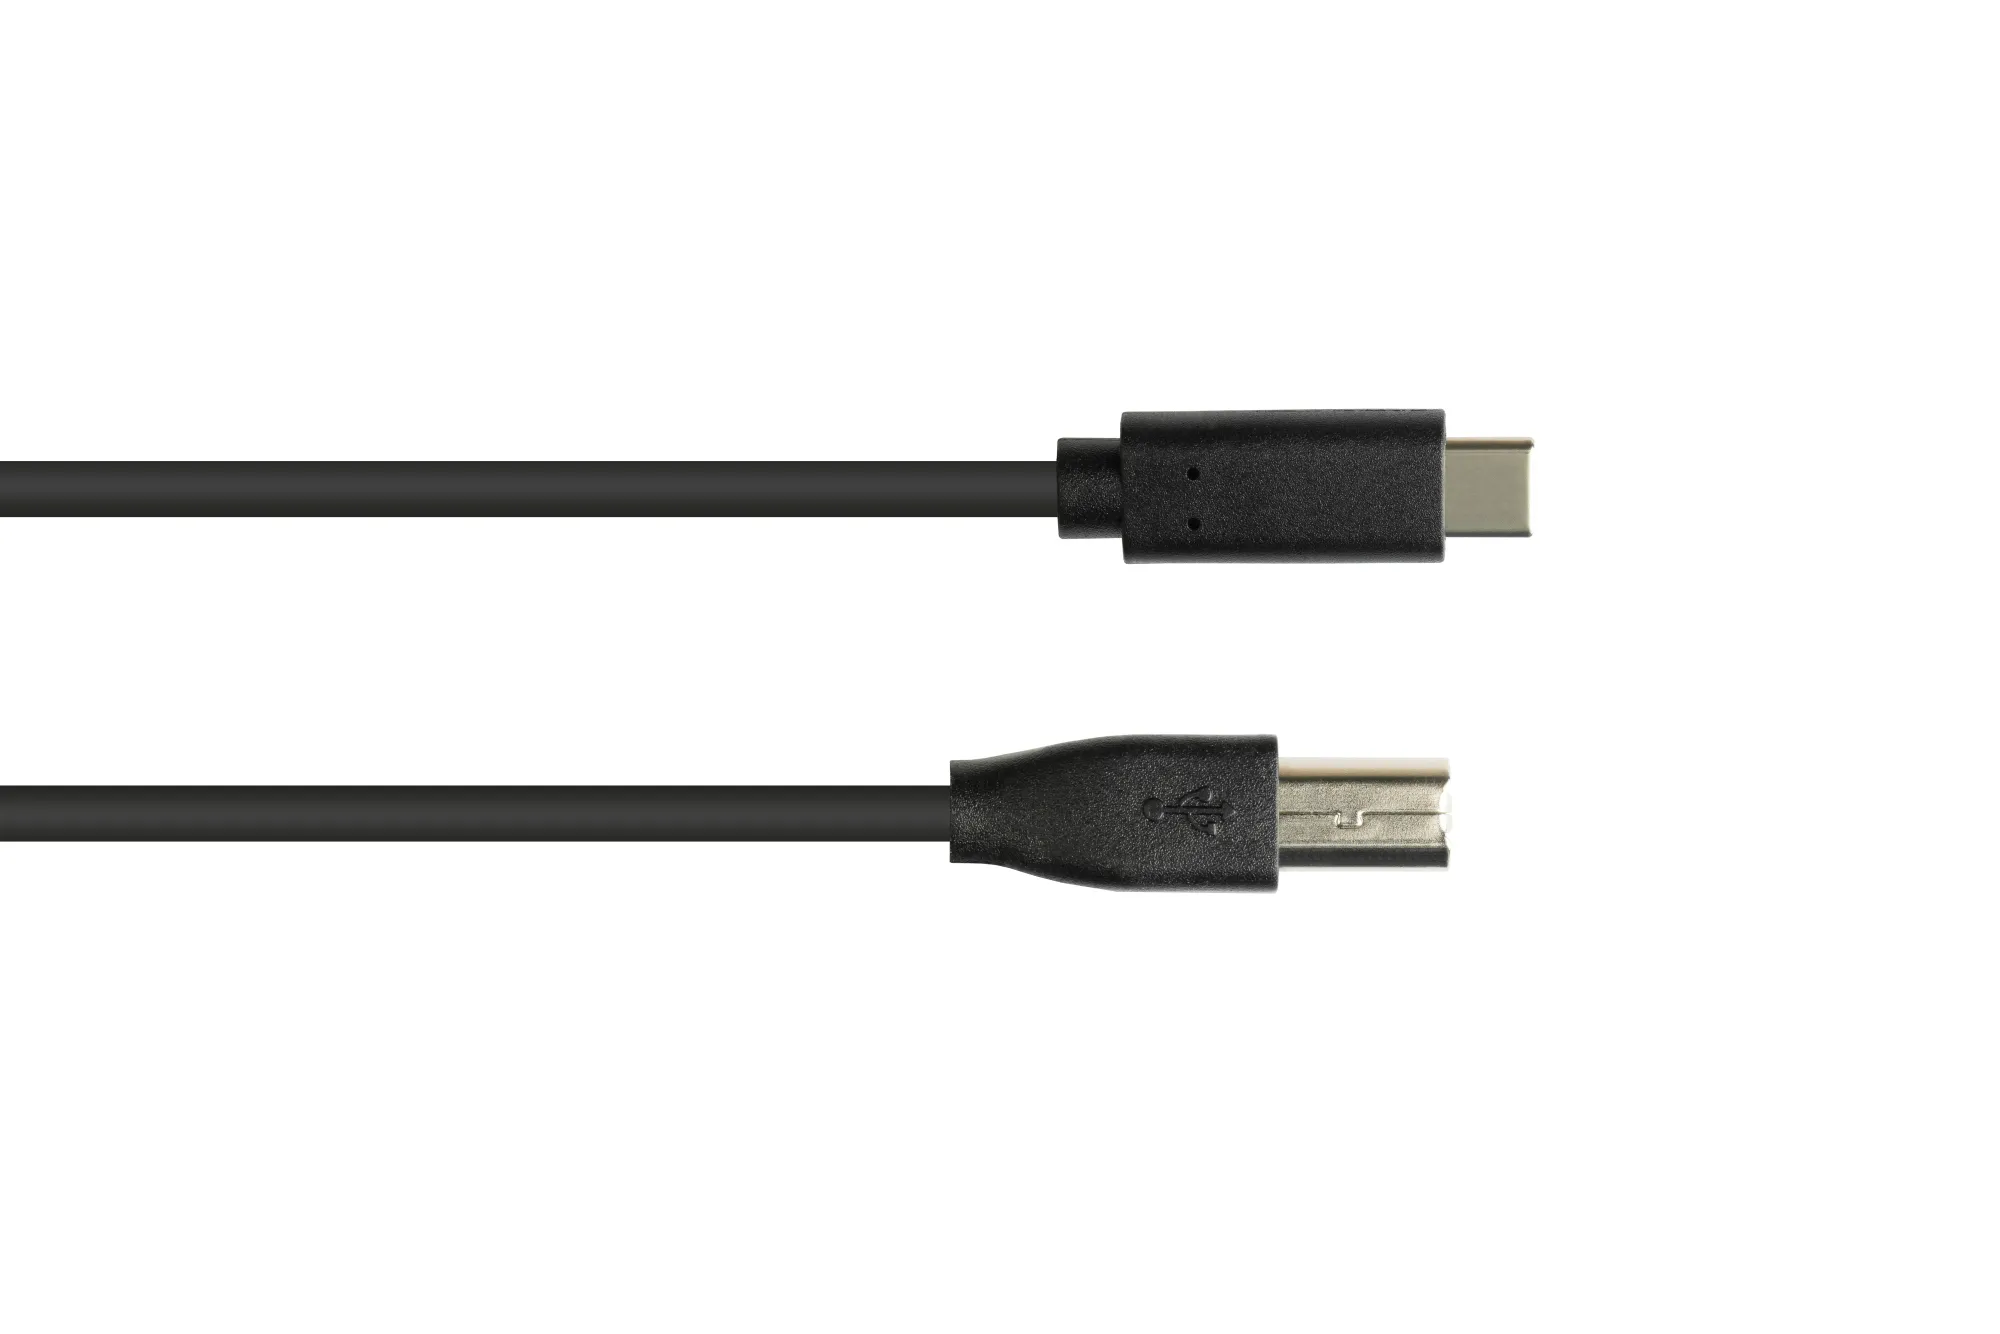 Anschlusskabel USB 2.0, USB-C™ Stecker an USB 2.0 B Stecker, CU, schwarz, 5m, Good Connections®